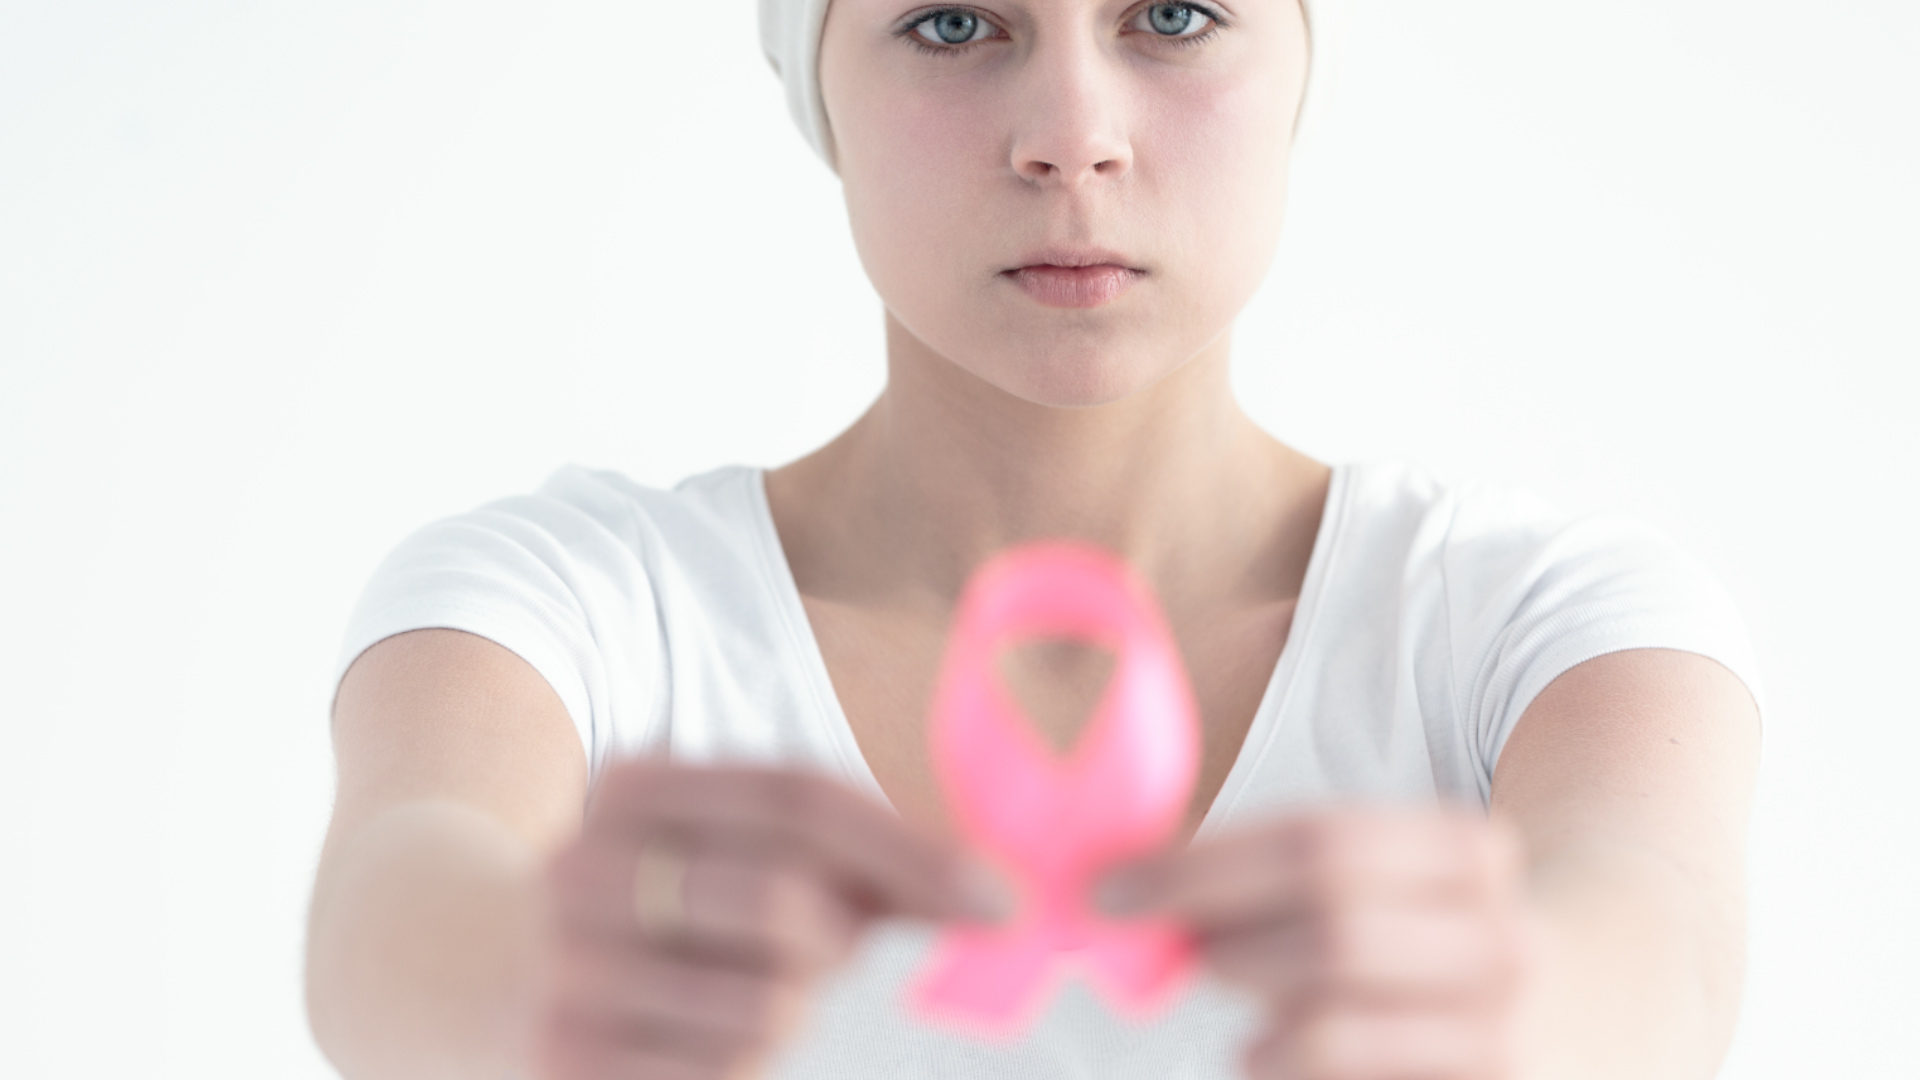 El cáncer de mama segundo tumor maligno más frecuente en el mundo. Foto: Internet.